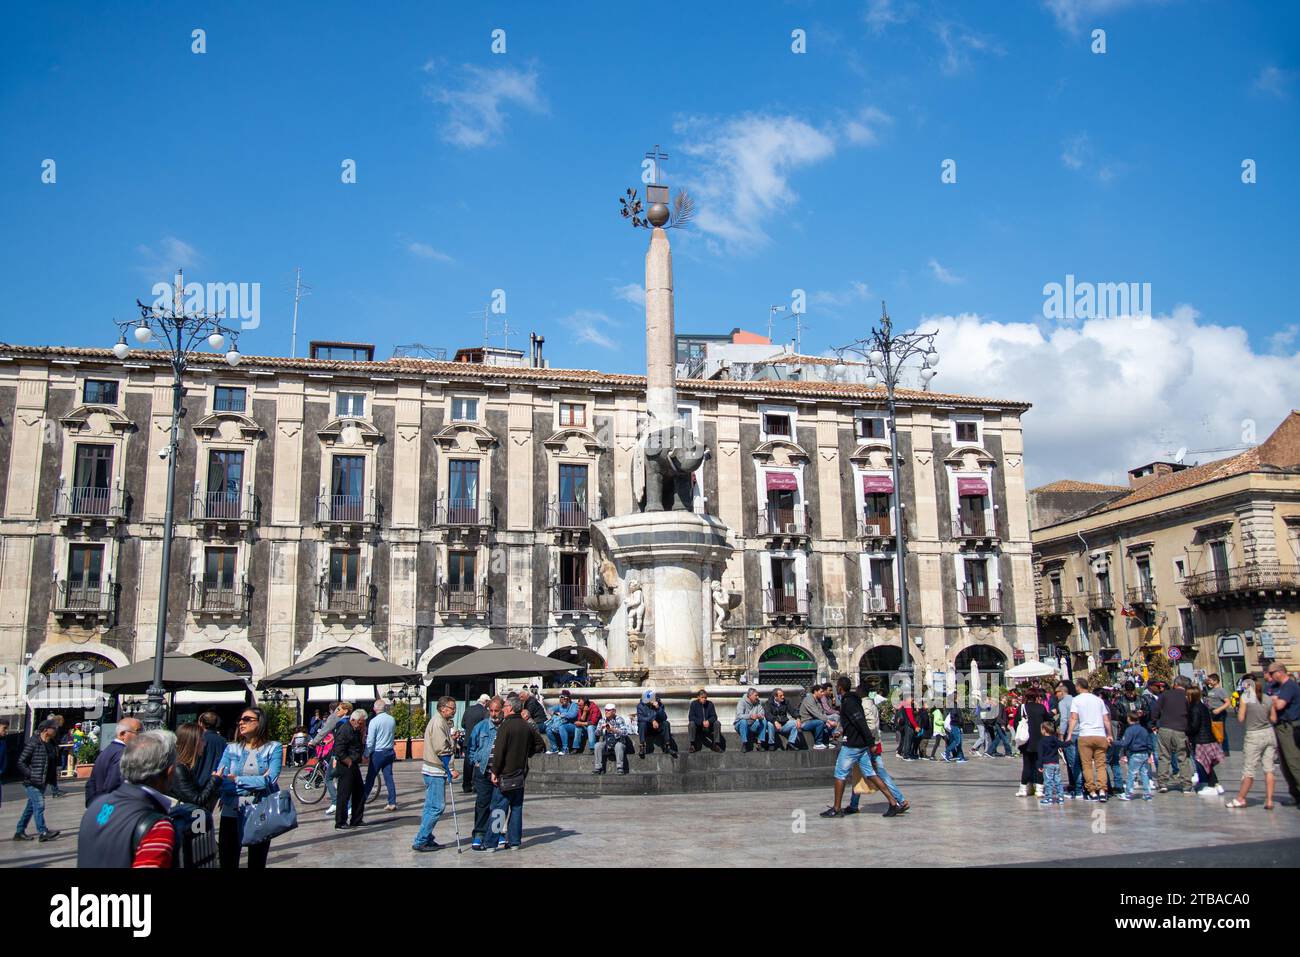 Edificio storico e fontana dell'Elefante in piazza dell'Università di Catania, Sicilia, Italia Foto Stock